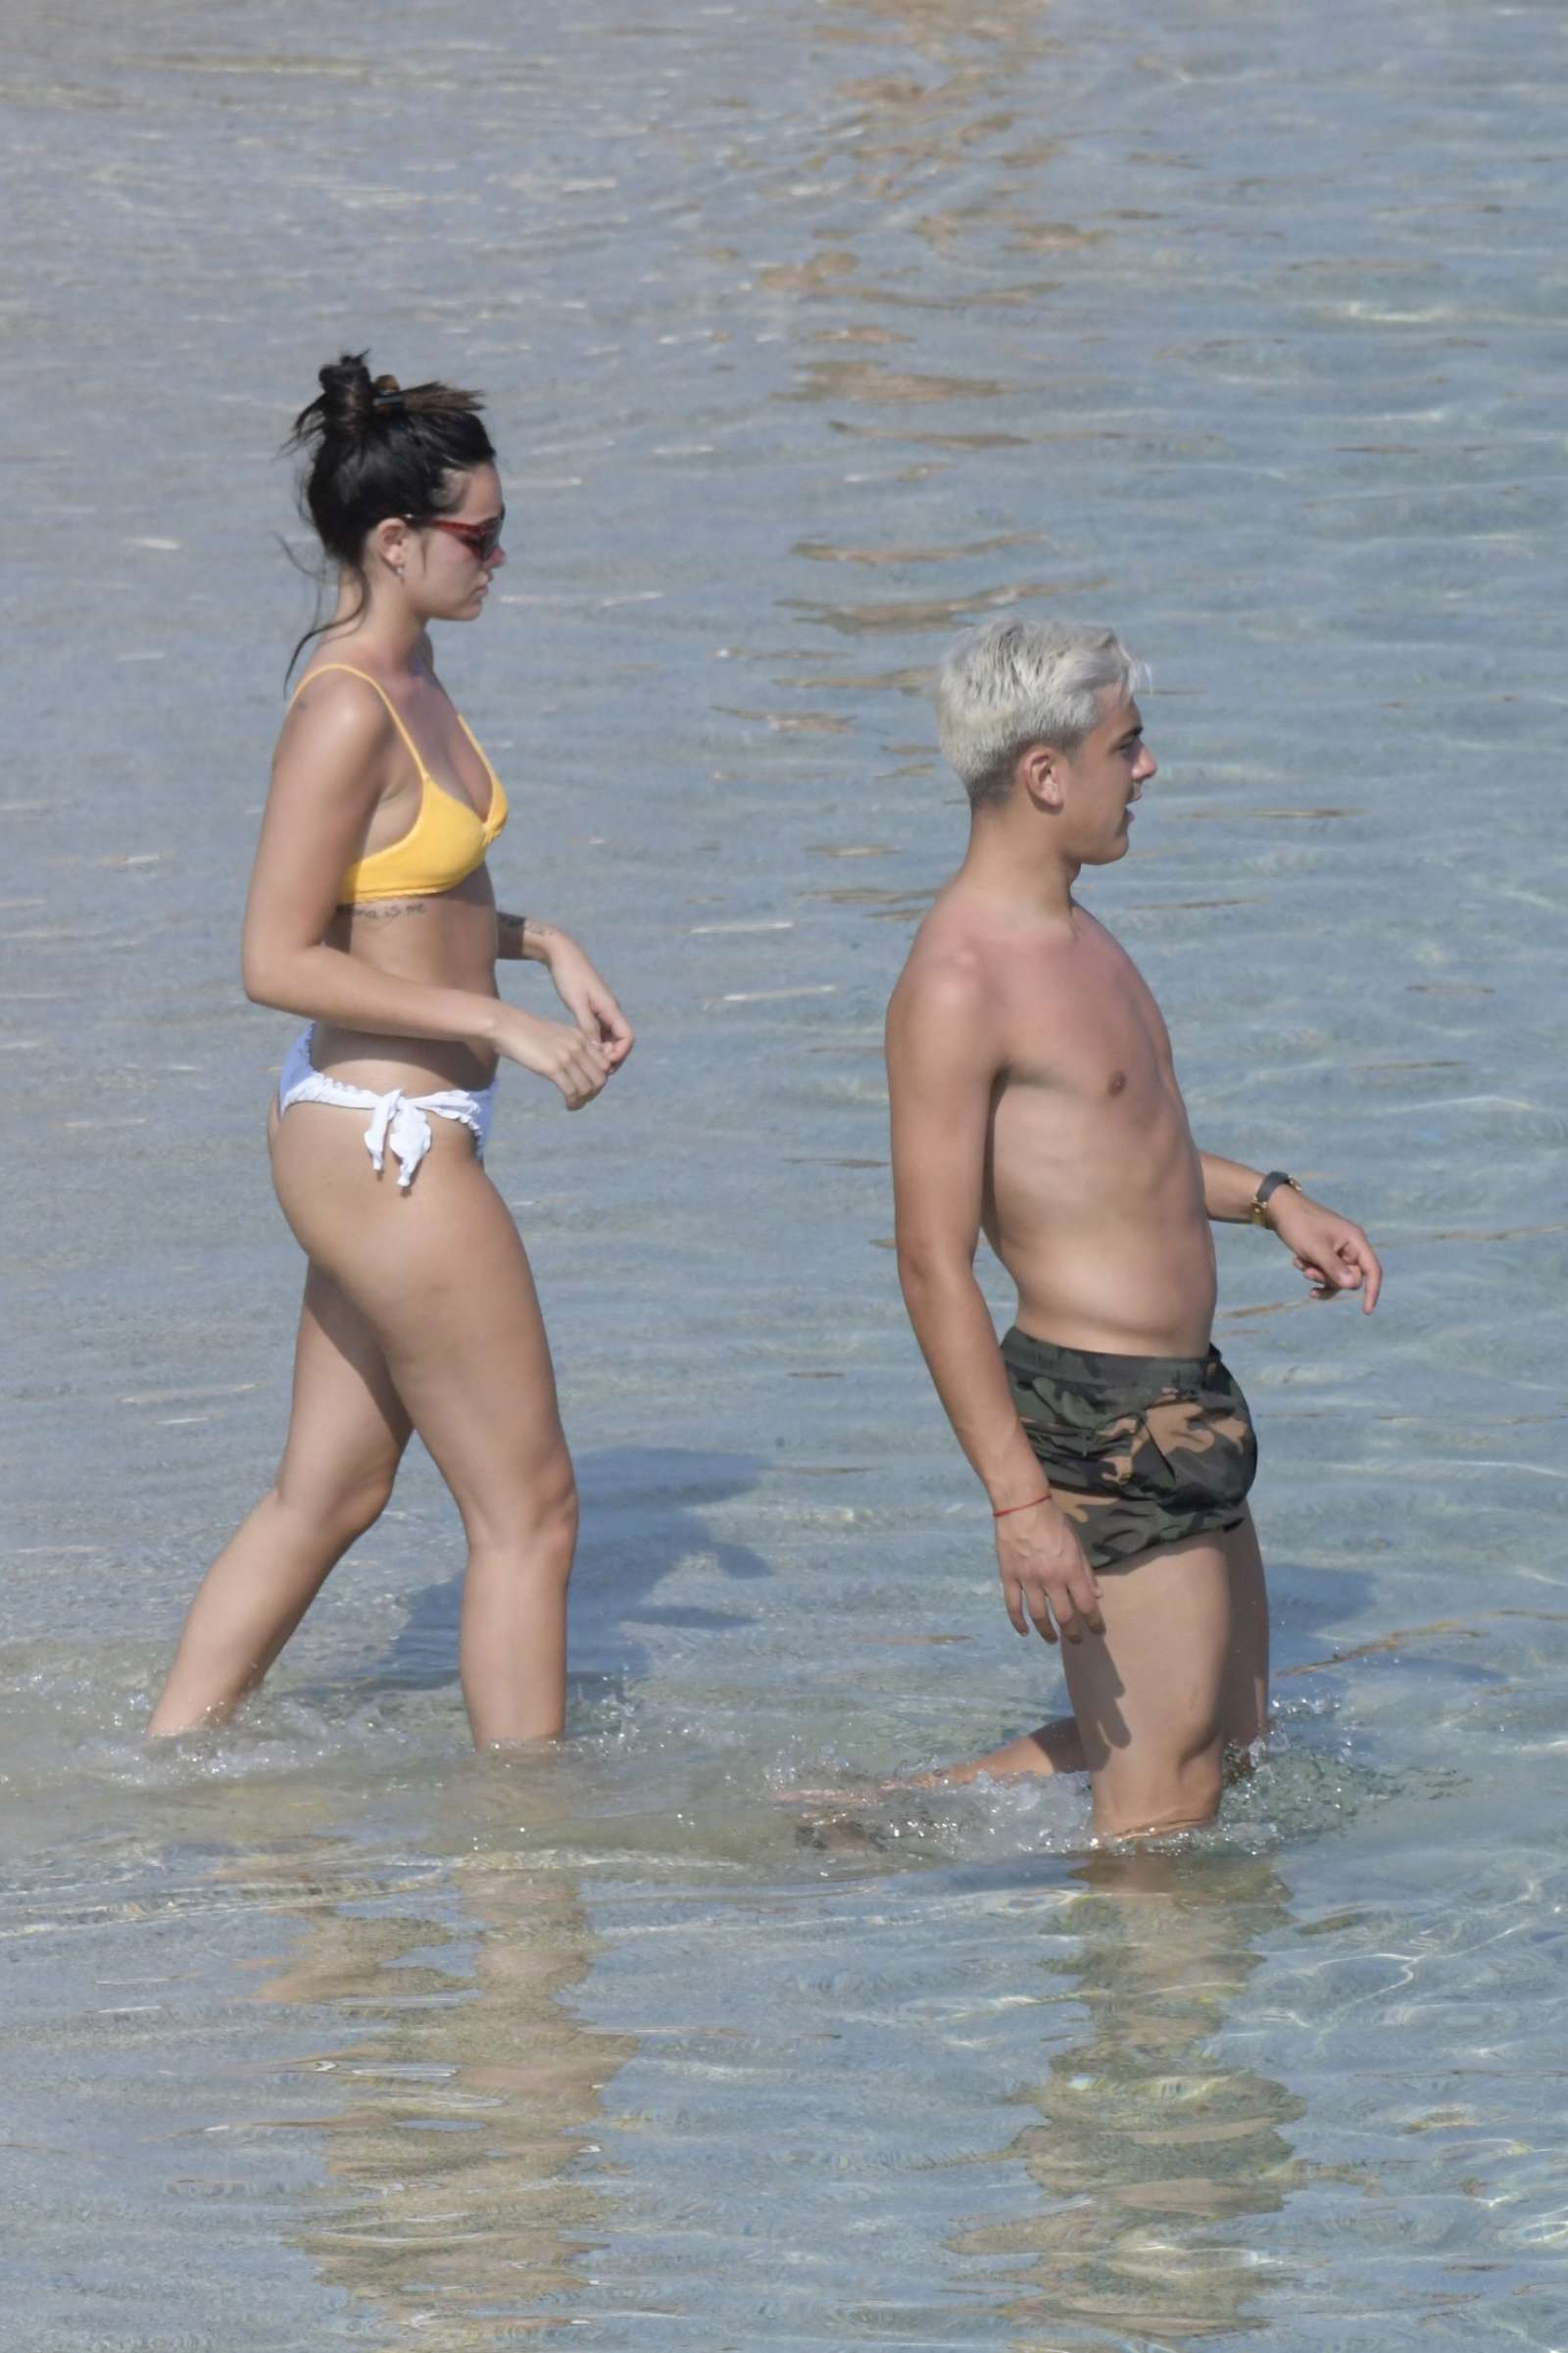 Oriana Sabatini in Bikini at the beach in Mykonos July 28, 2018 32